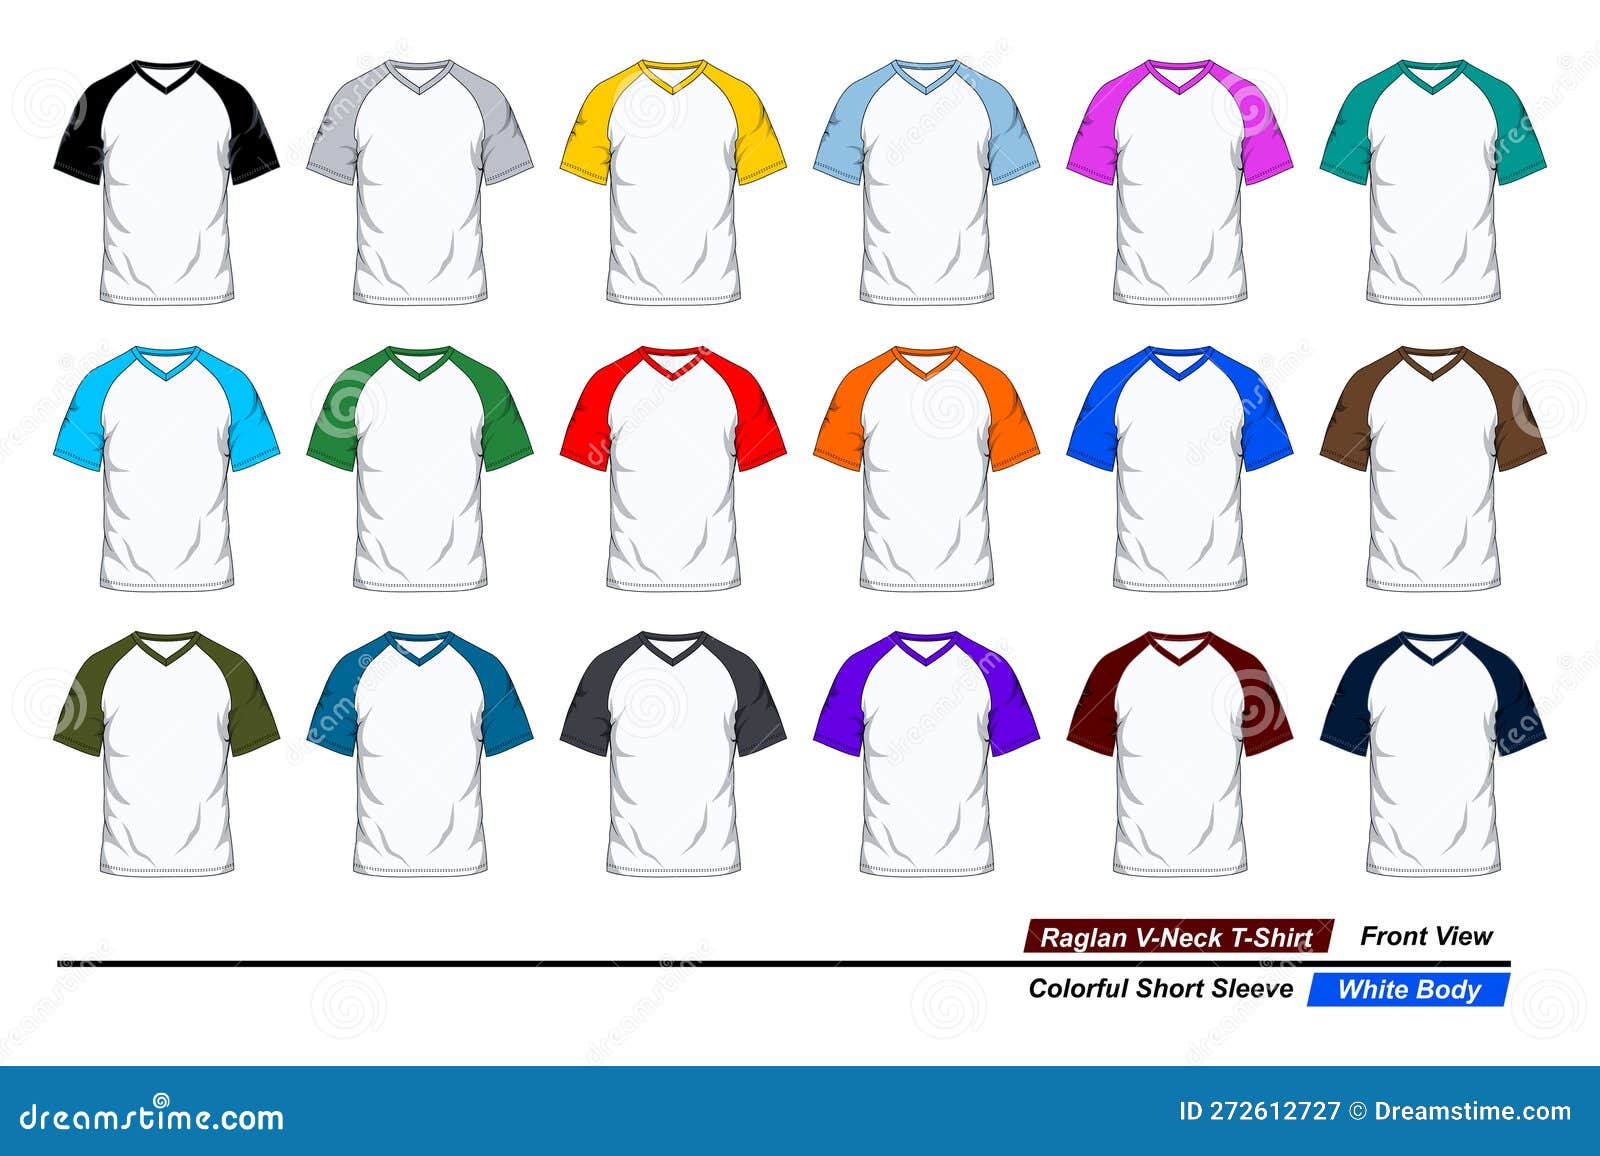 White v-neck t shirt template. vector illustration Stock Vector